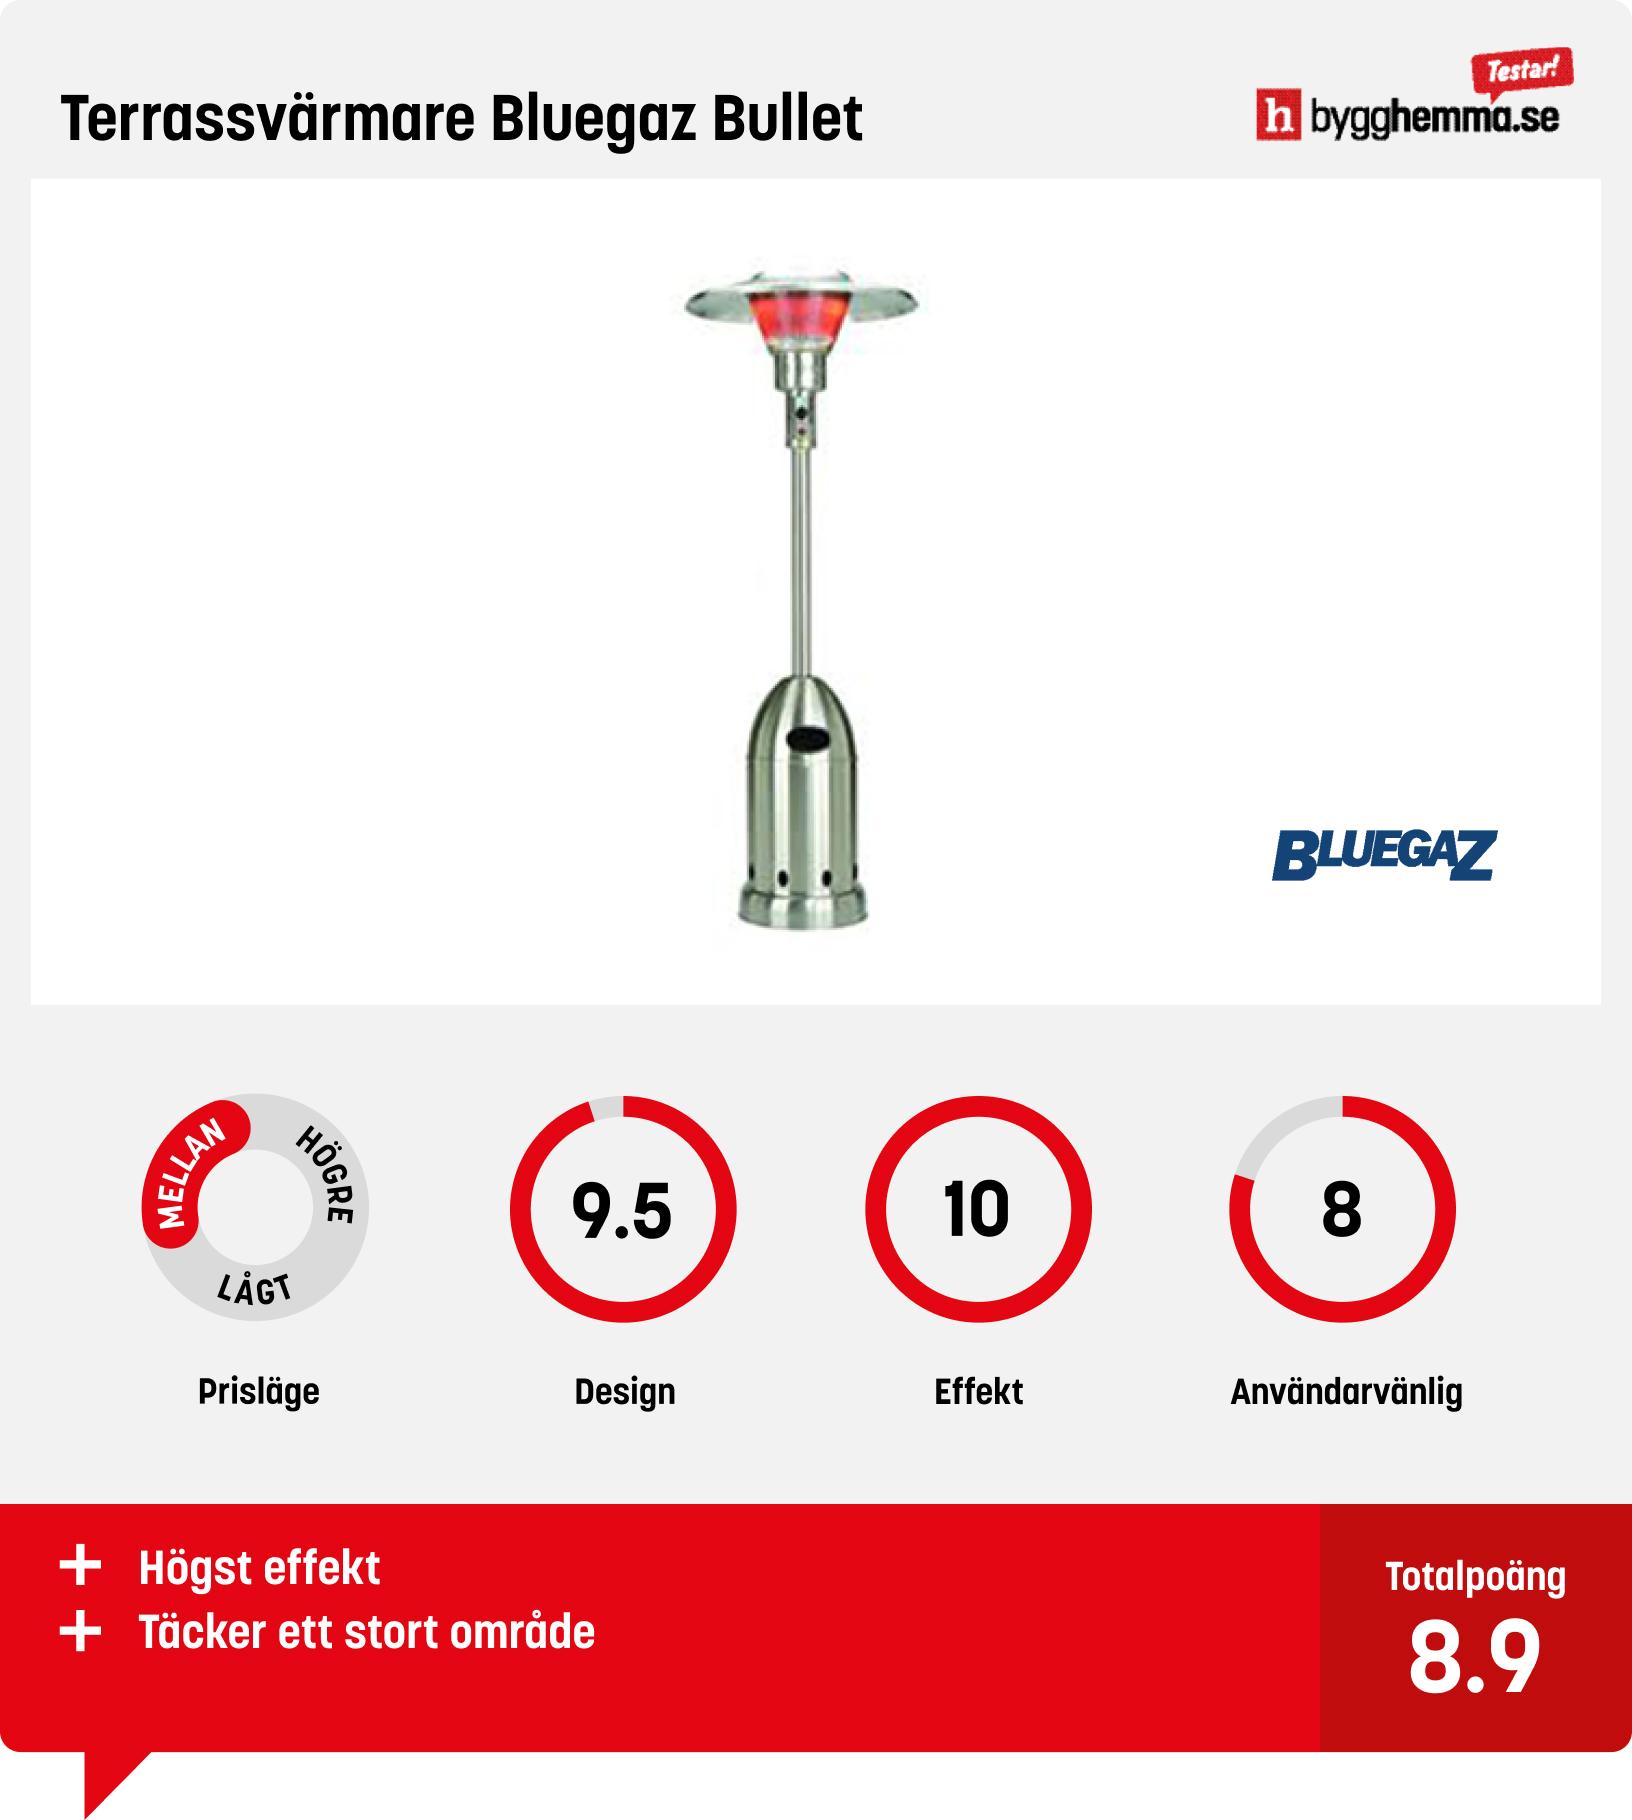 Terrassvärmare gasol bäst i test - Terrassvärmare Bluegaz Bullet